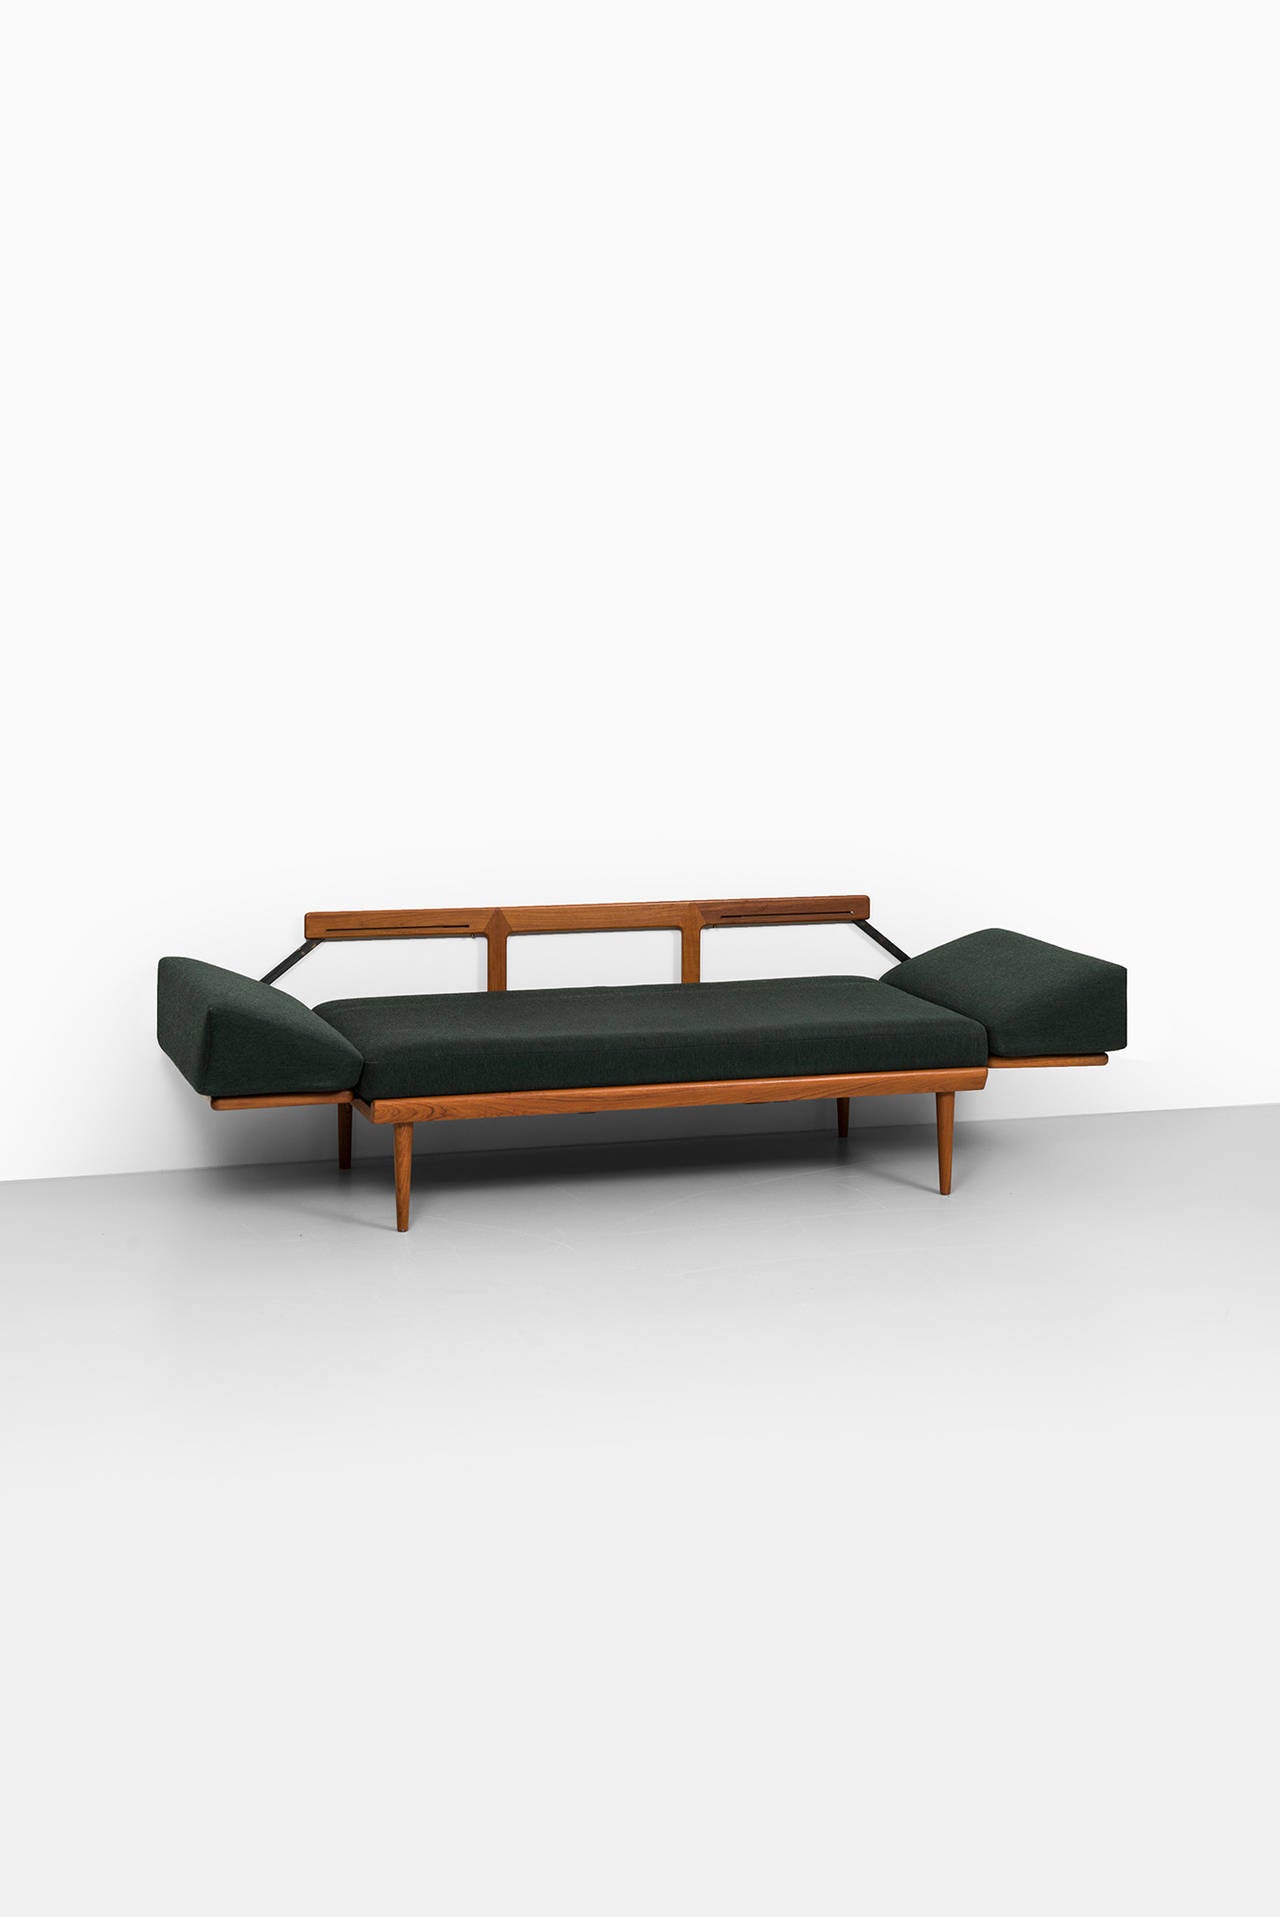 Cane Peter Hvidt & Orla Mølgaard-Nielsen sofa model FD 451